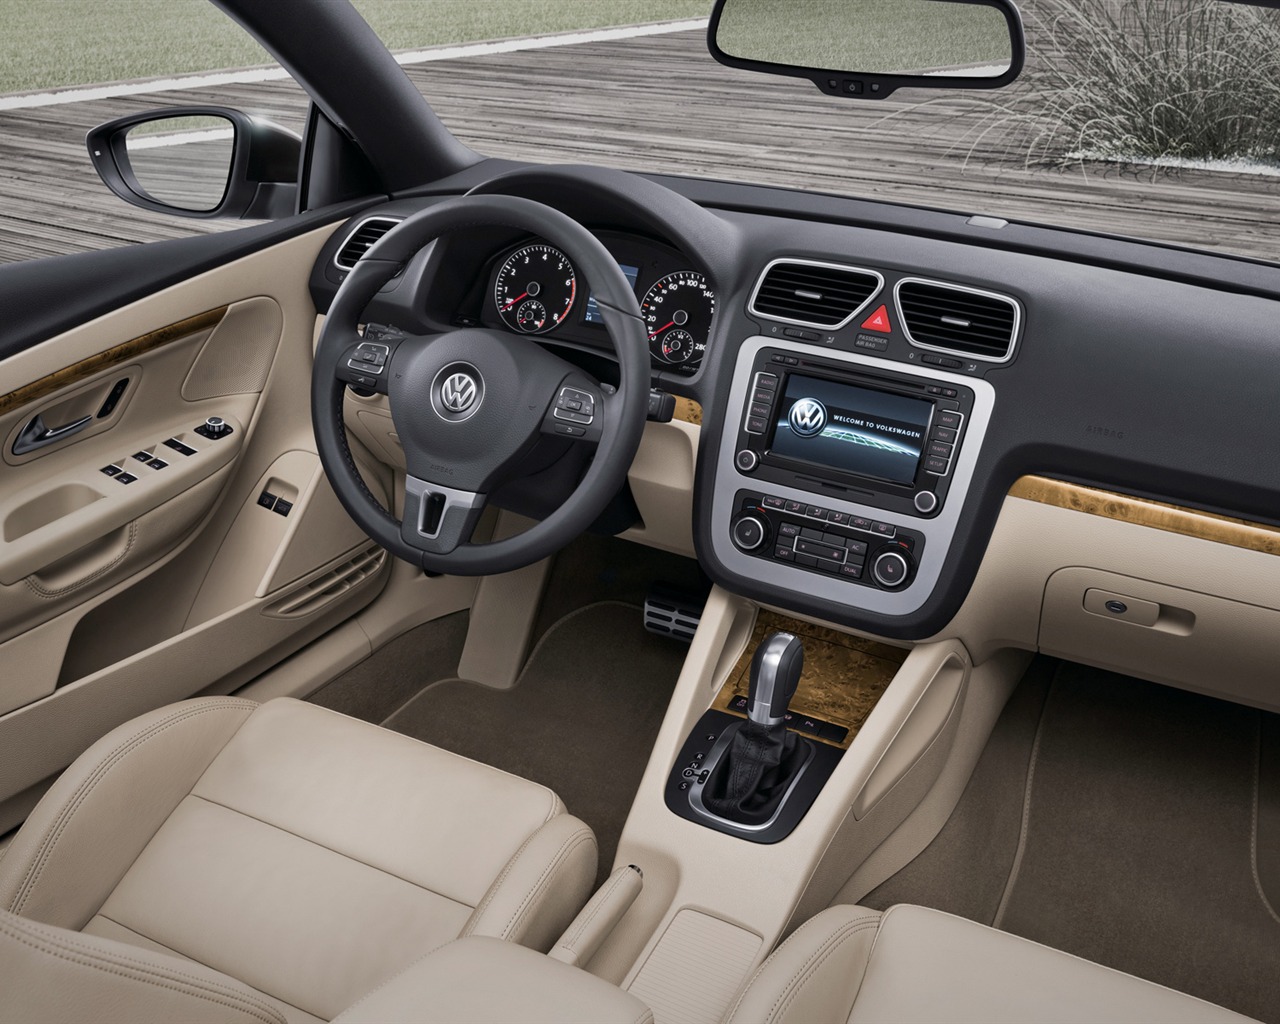 Volkswagen Eos - 2011 大众15 - 1280x1024